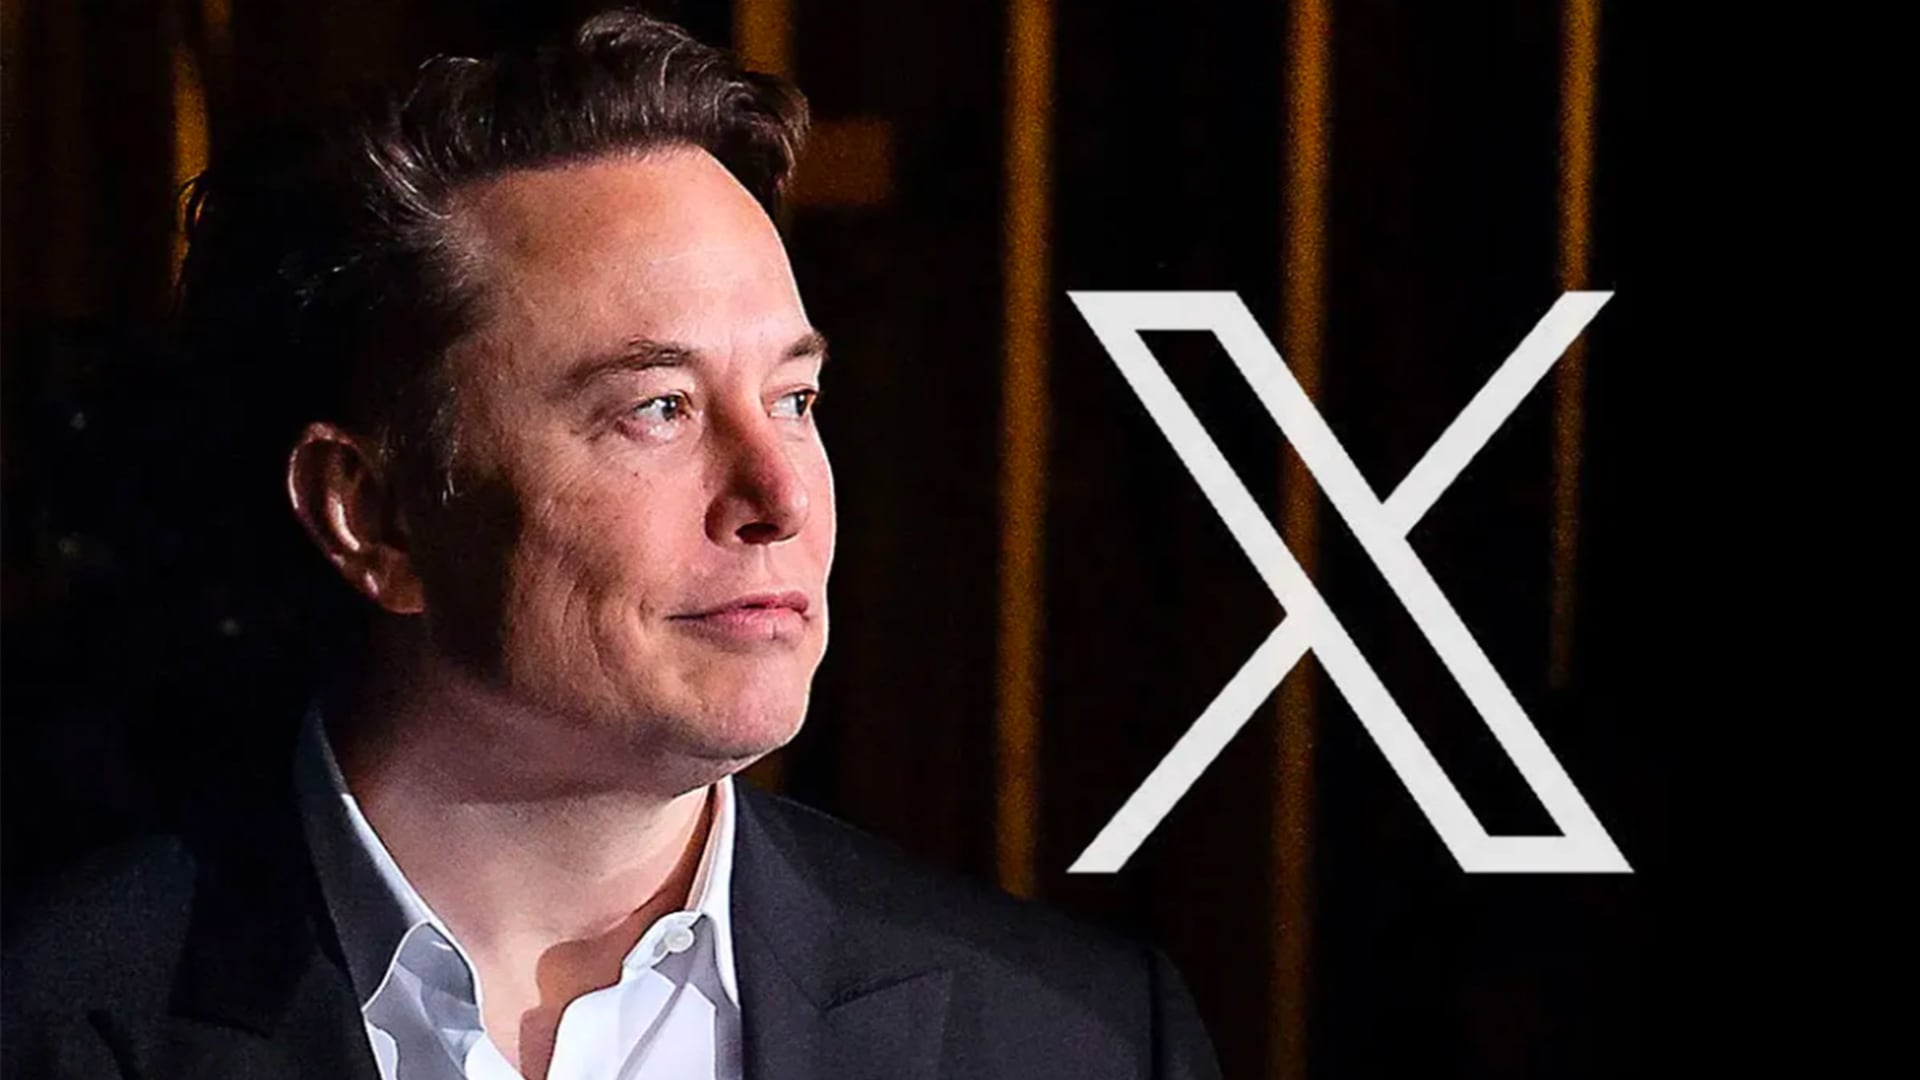 MrBeast, 's biggest star, tests X after Elon Musk invitation